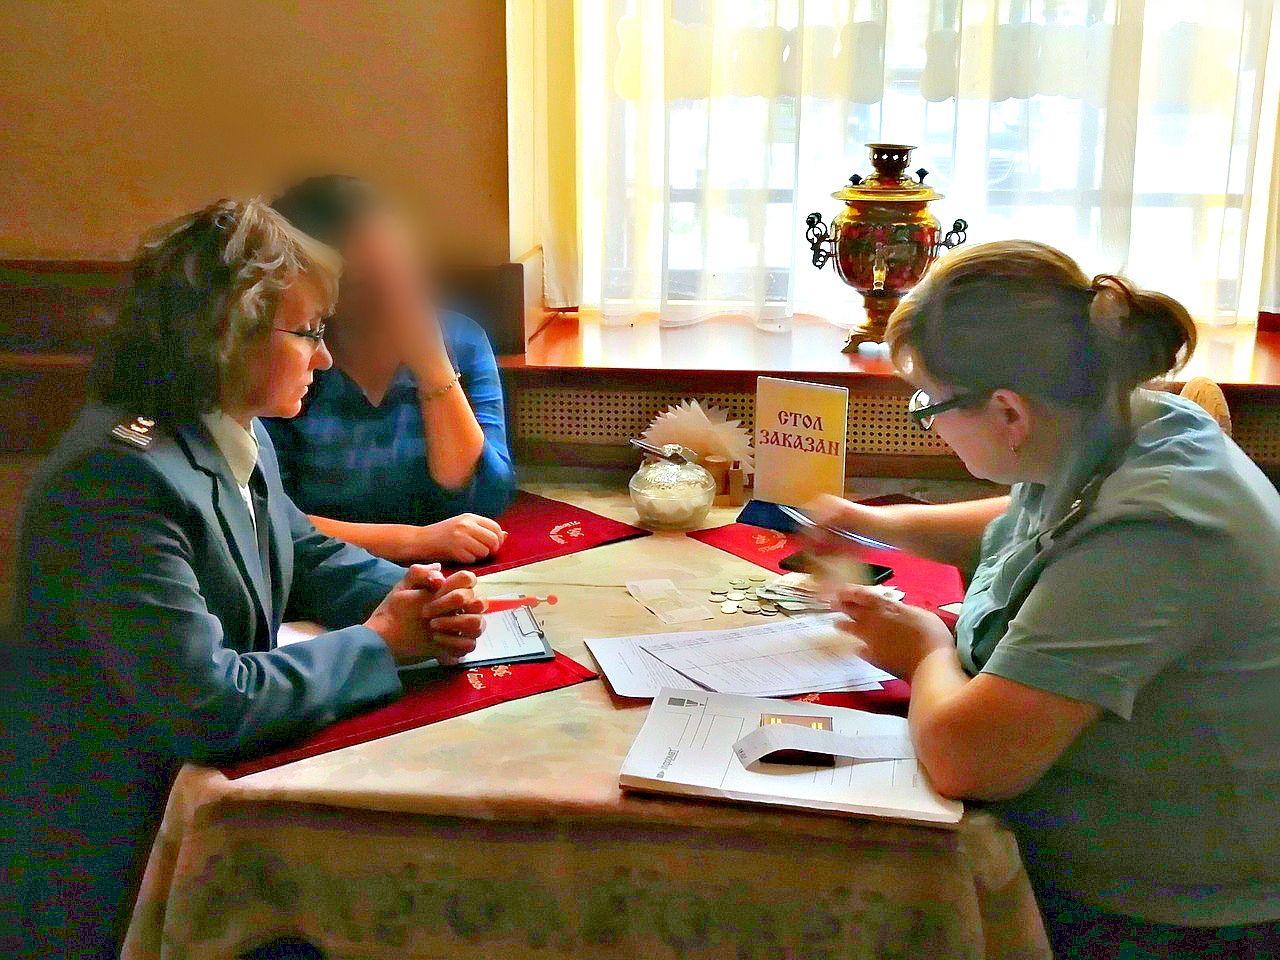 Забрали выручку и ушли: подробности скандала в ярославском кафе